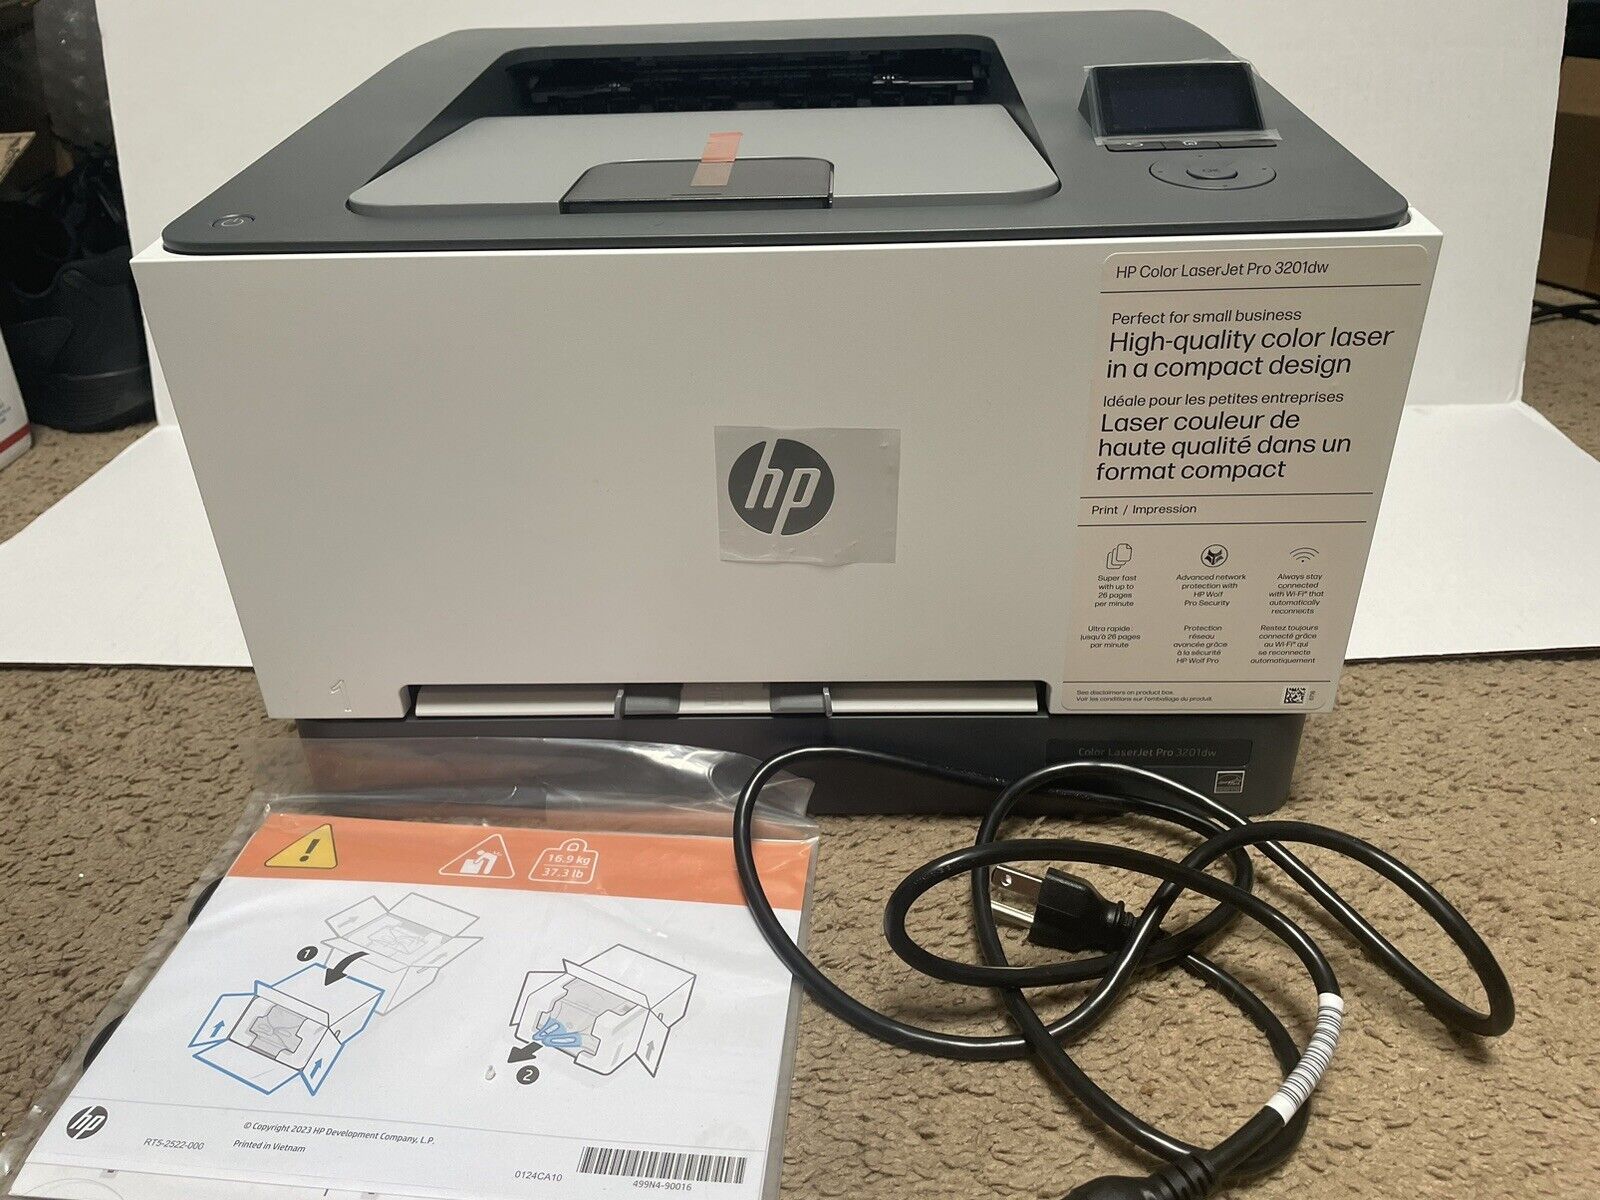 HP Color LaserJet Pro 3201dw Laser Printer Color Mobile Print Brand New Opened